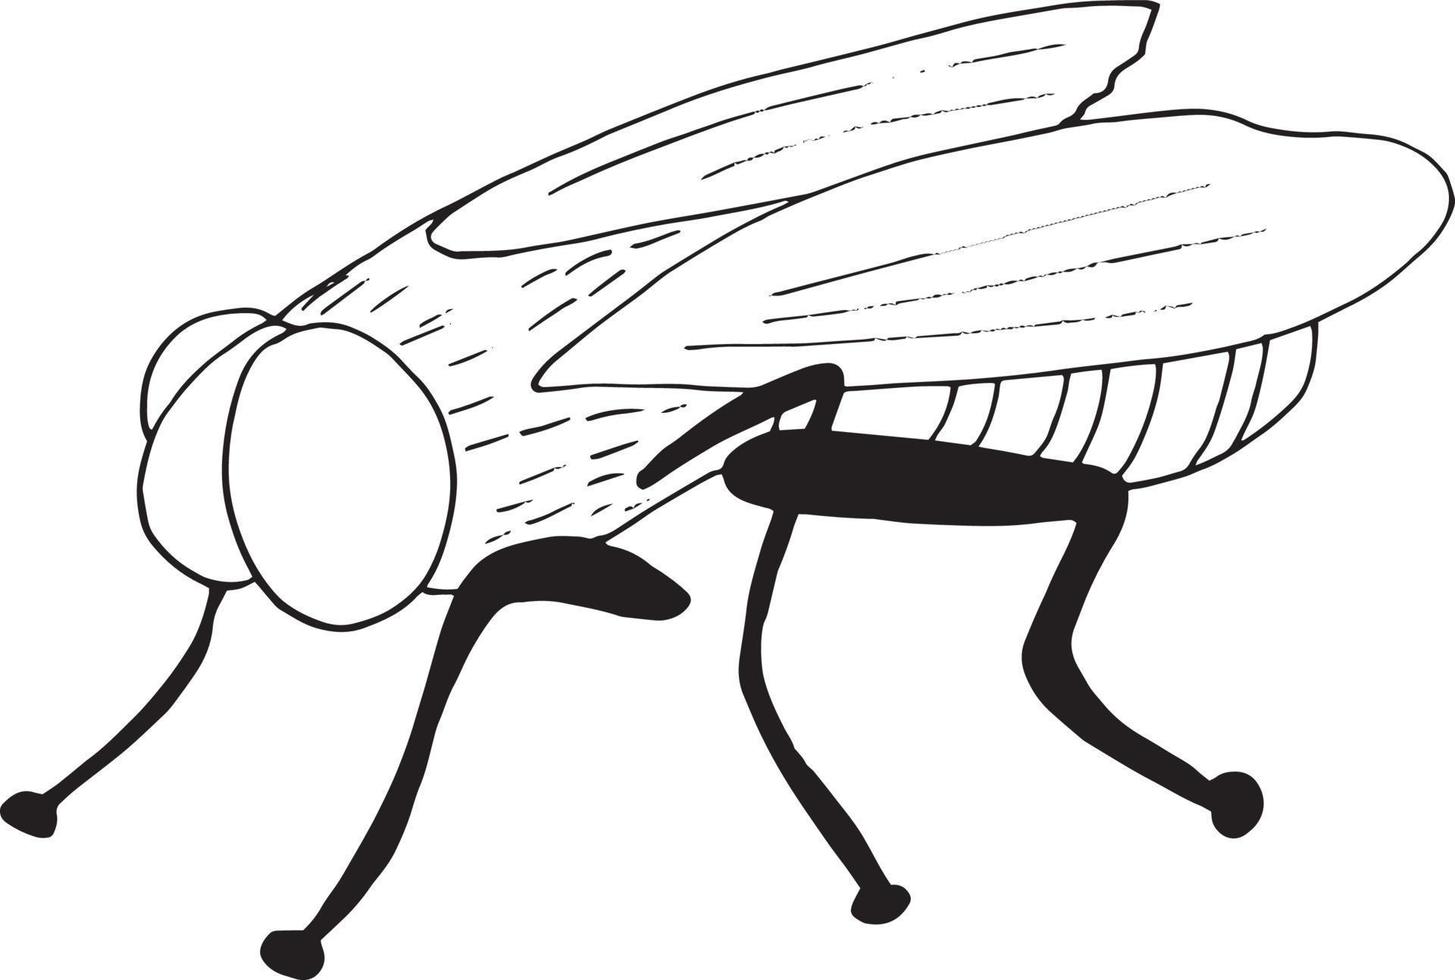 icono de mosca. estilo de garabato dibujado a mano. , minimalismo, moscas de plagas de insectos de bosquejo monocromo vector